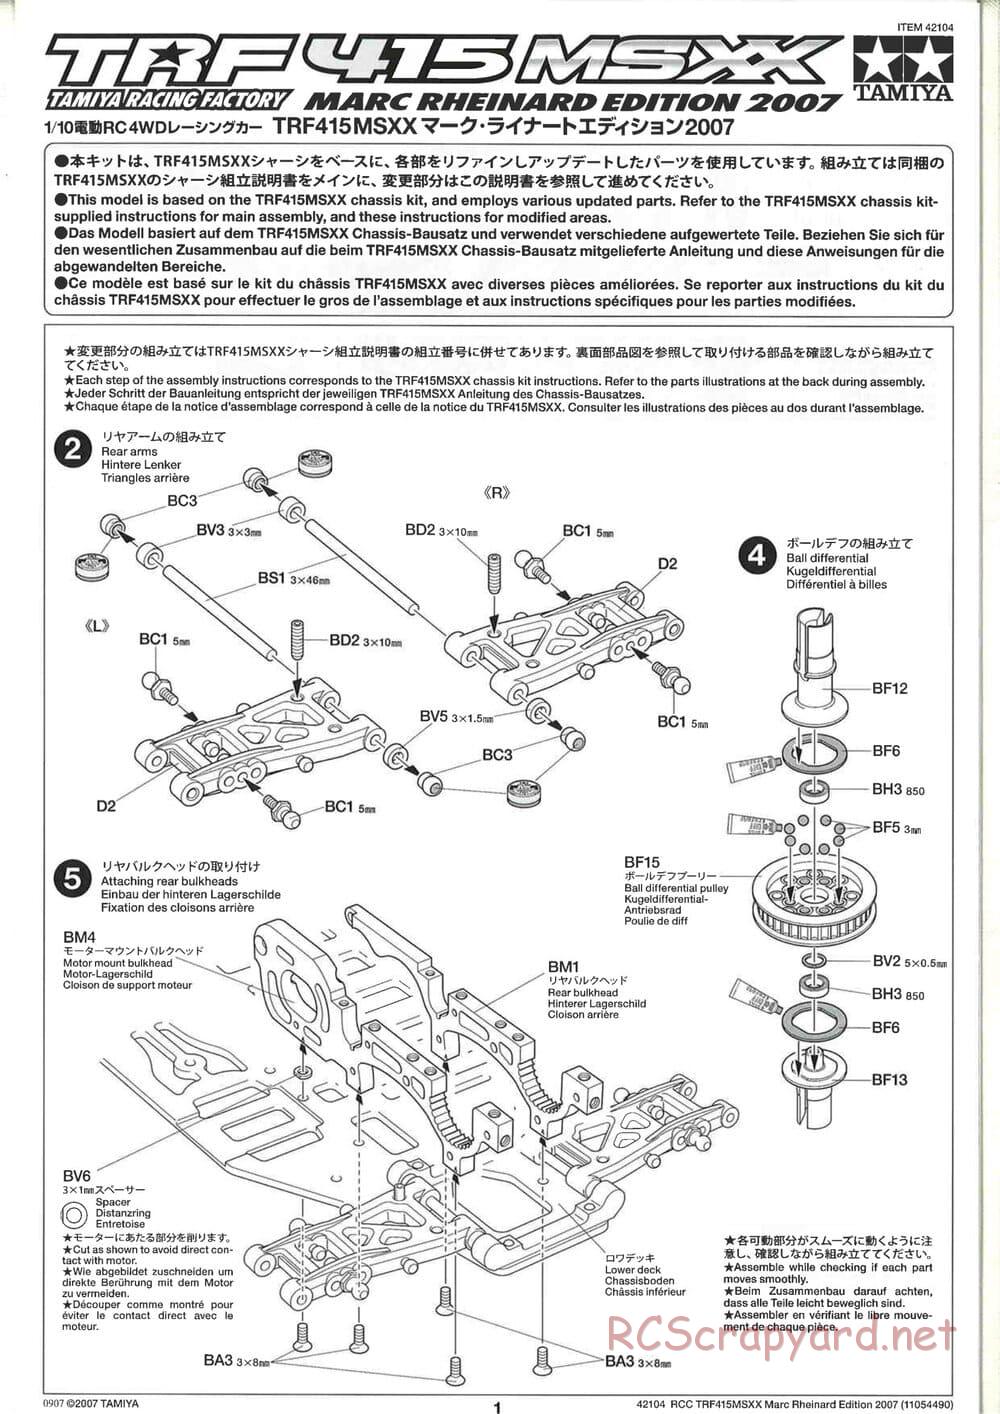 Tamiya - TRF415 MSXX - Marc Rheinard Edition 2007 Chassis - Manual - Page 1